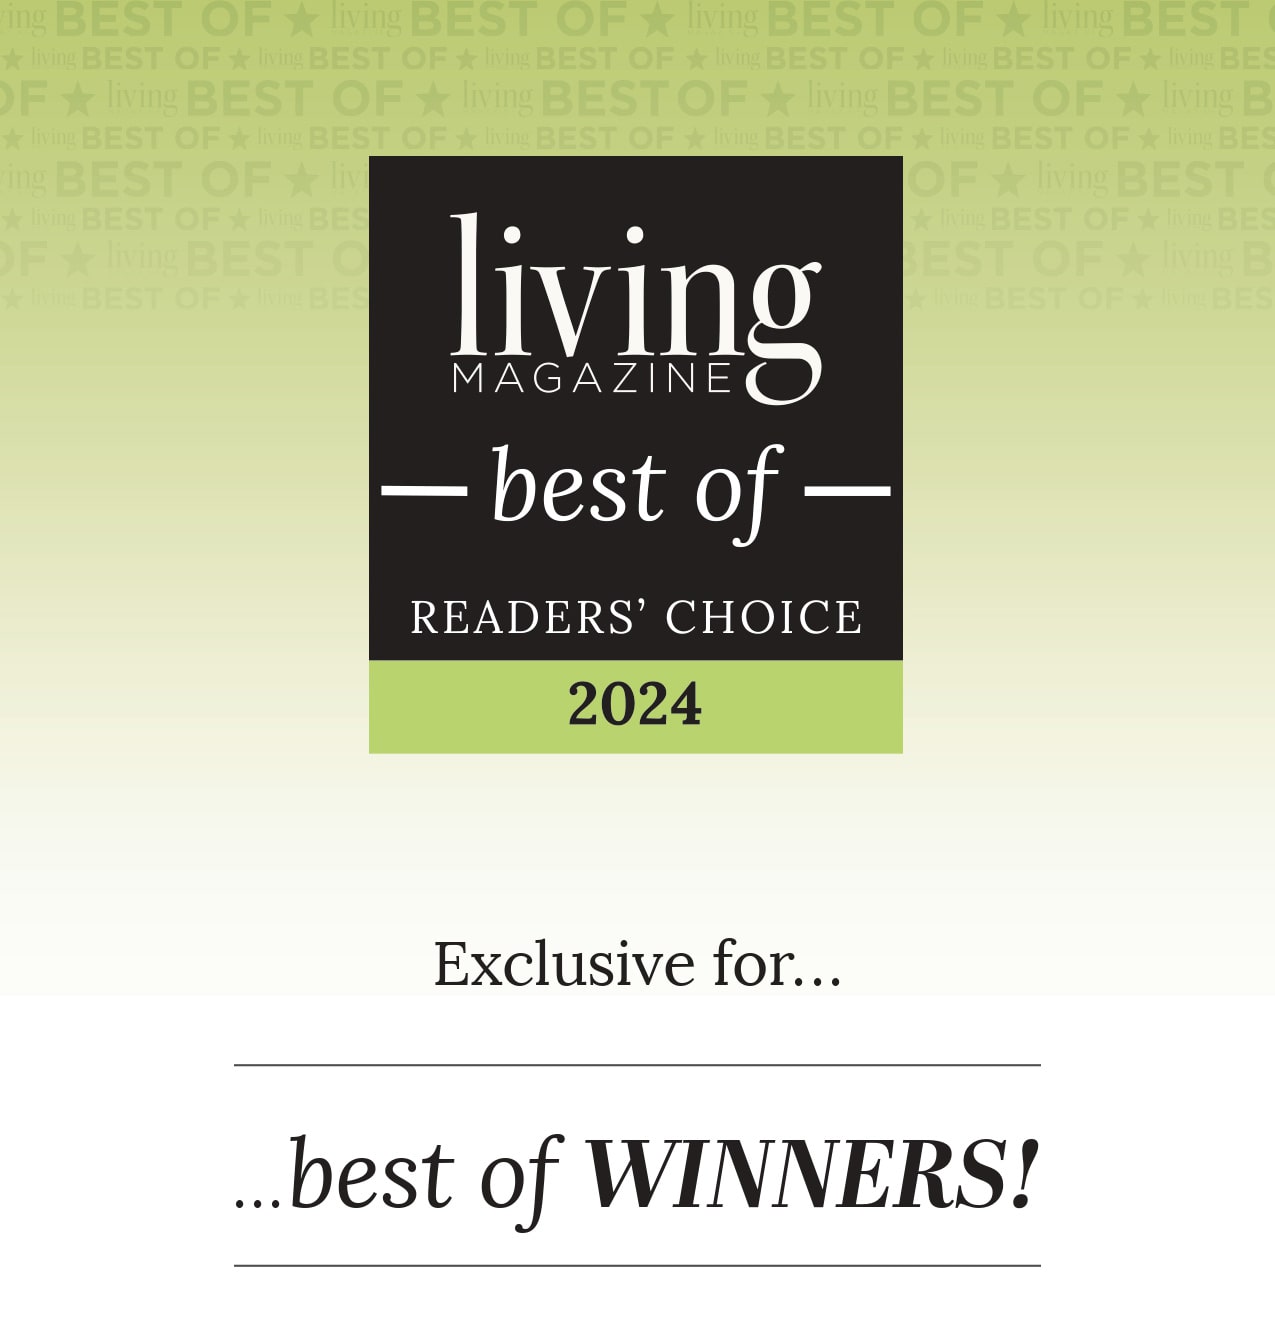 Living Magazine Best Award